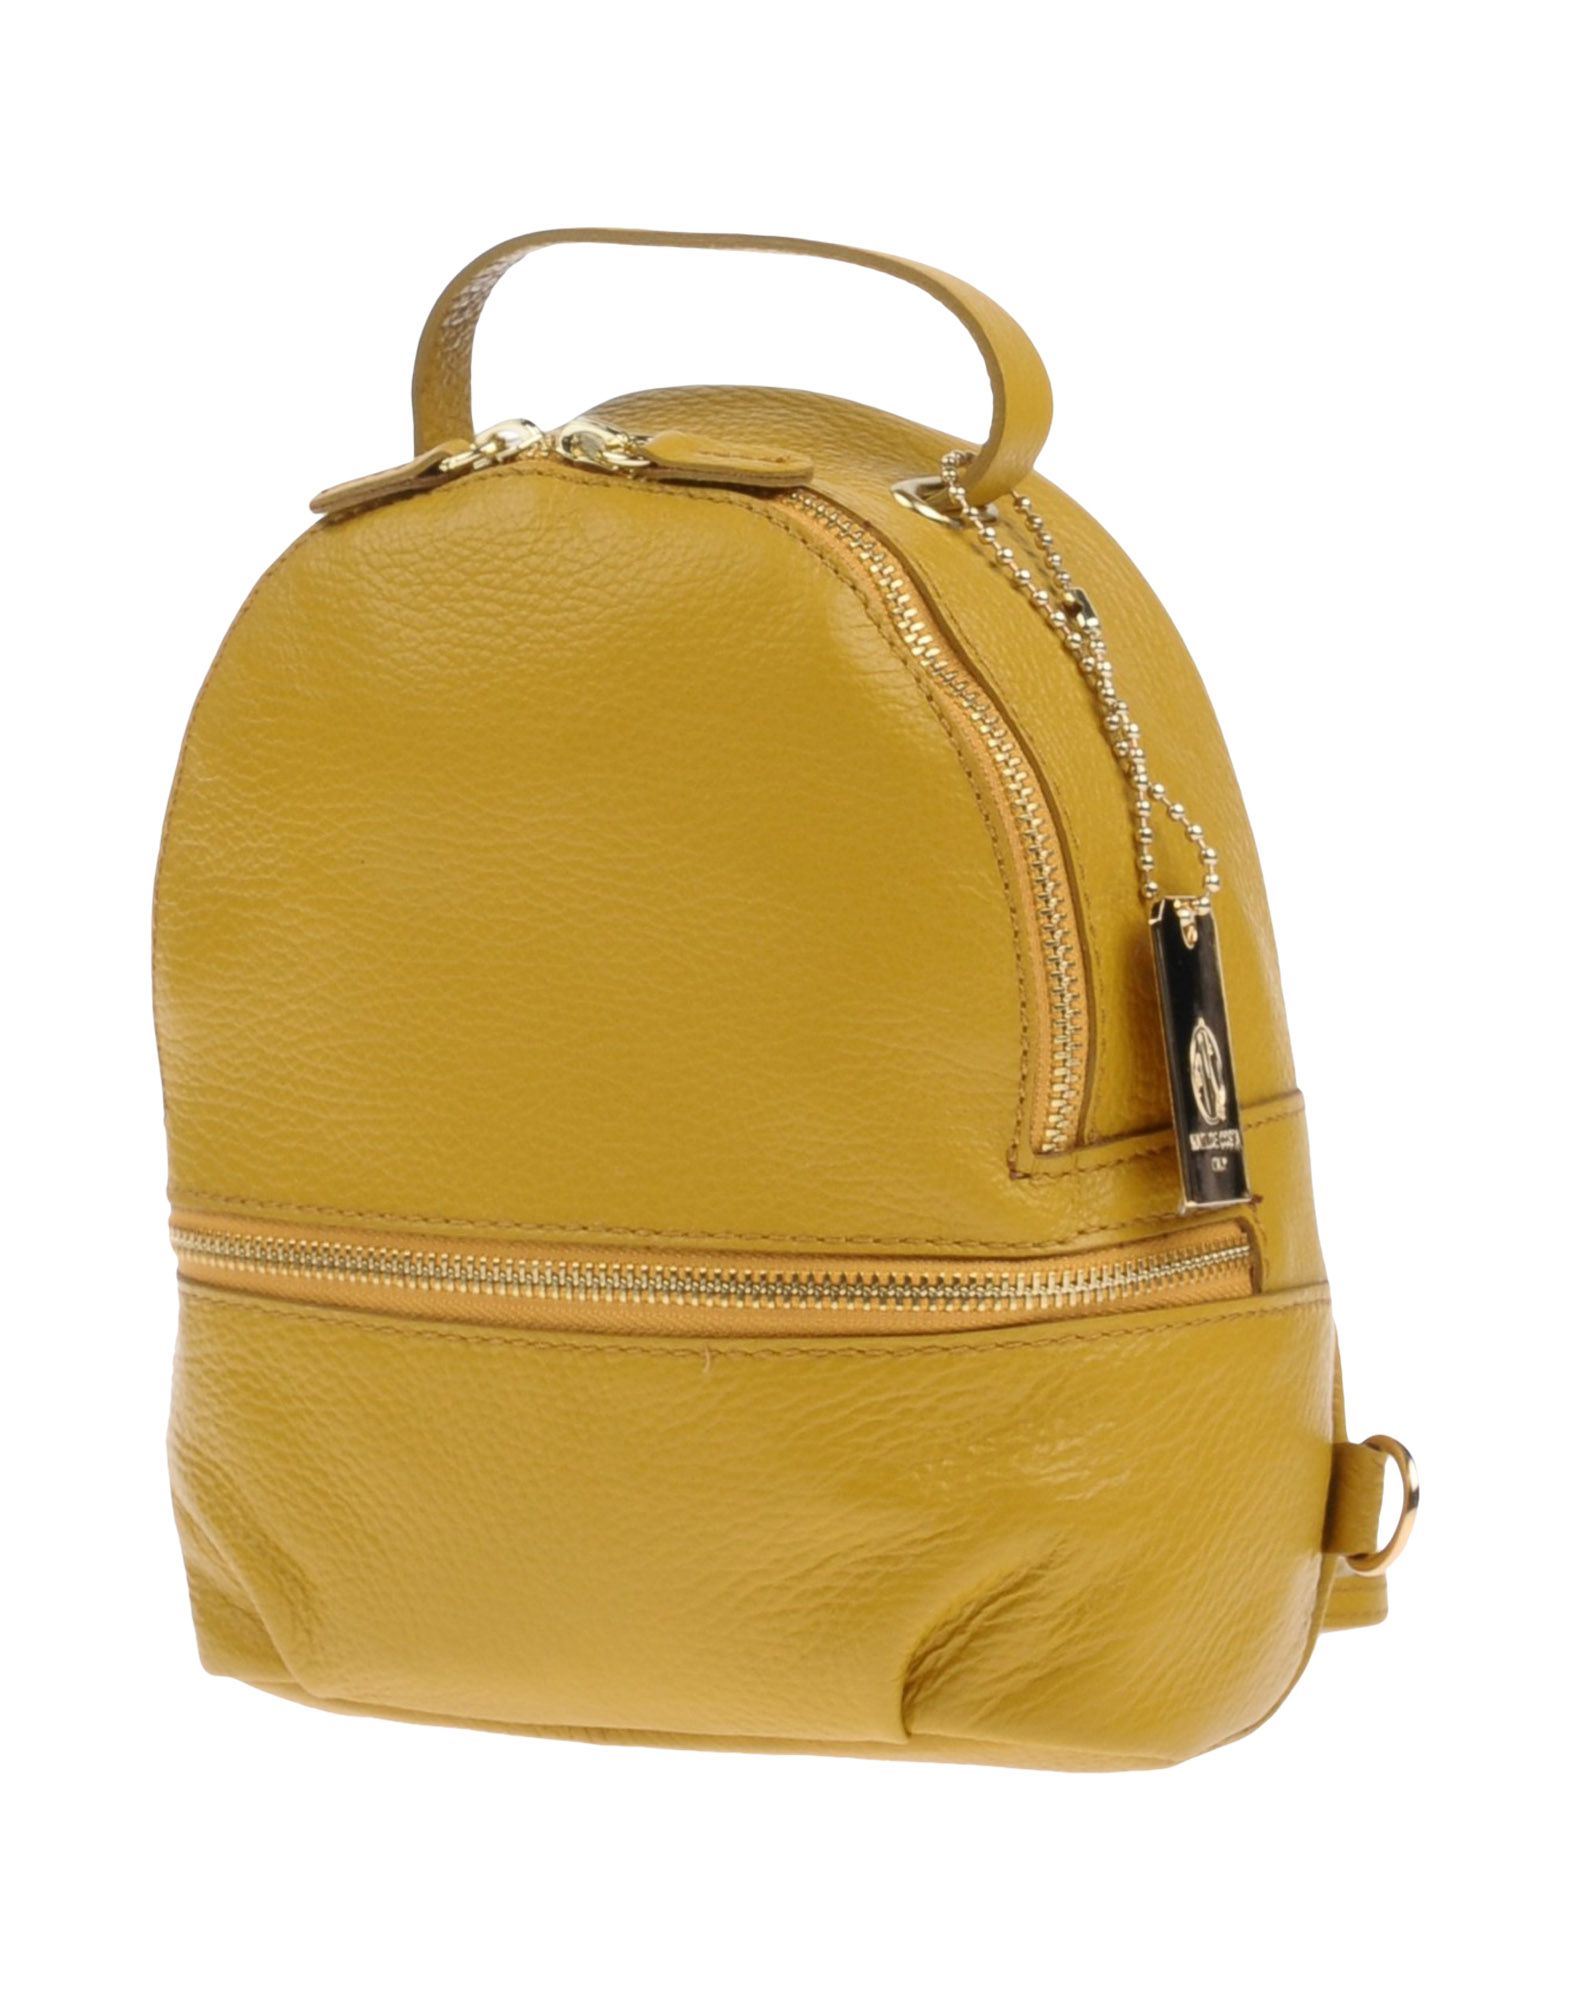 Деловая сумка  - Черный,Коричневый,Желтый цвет